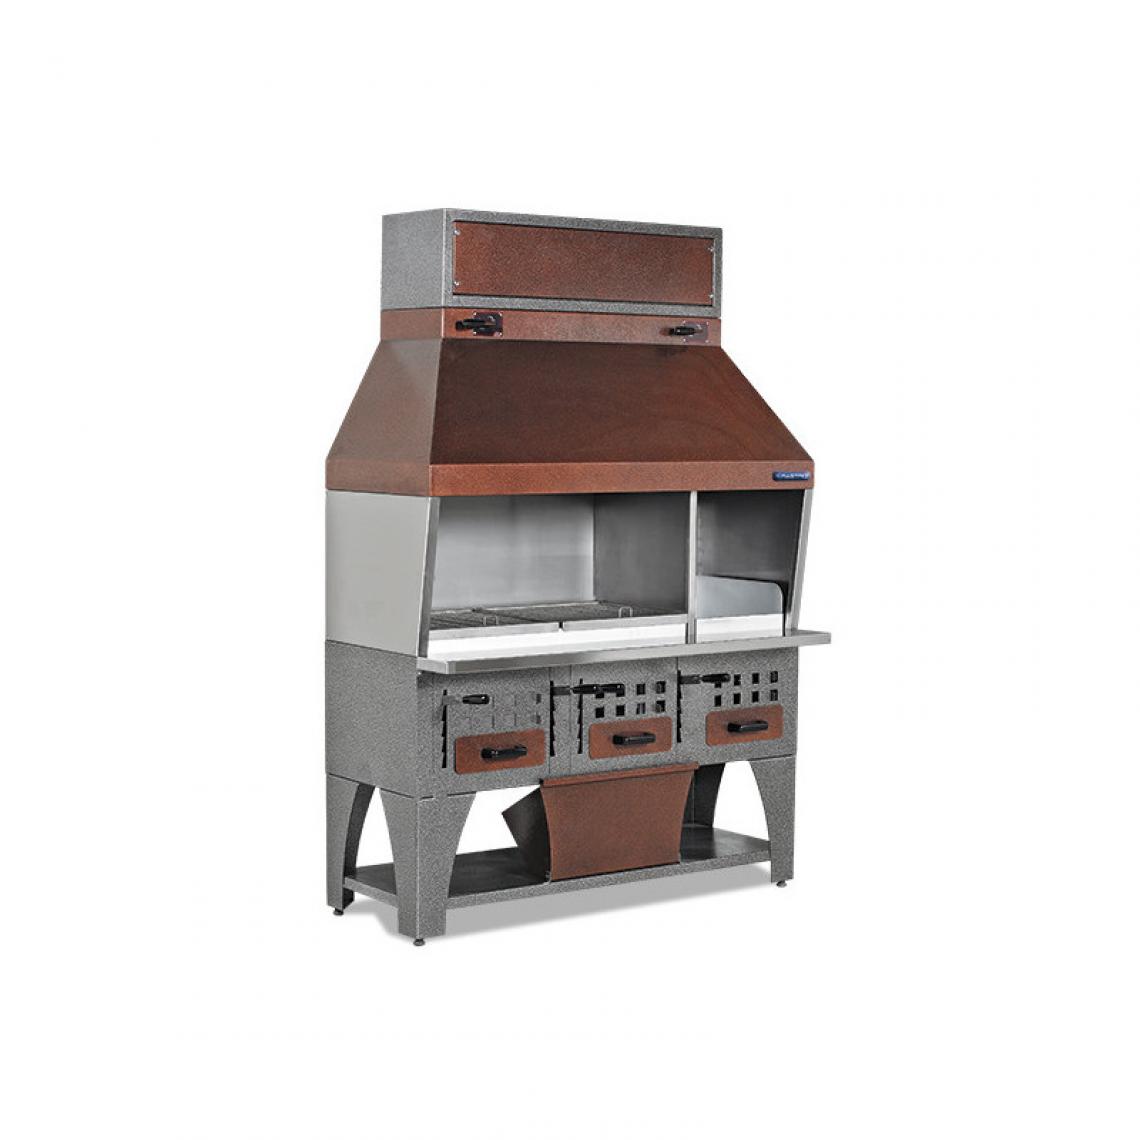 Materiel Chr Pro - Barbecue charbon de bois 1400 mm avec auvent sur armoire avec tiroir à charbon - Virtus - Barbecues charbon de bois